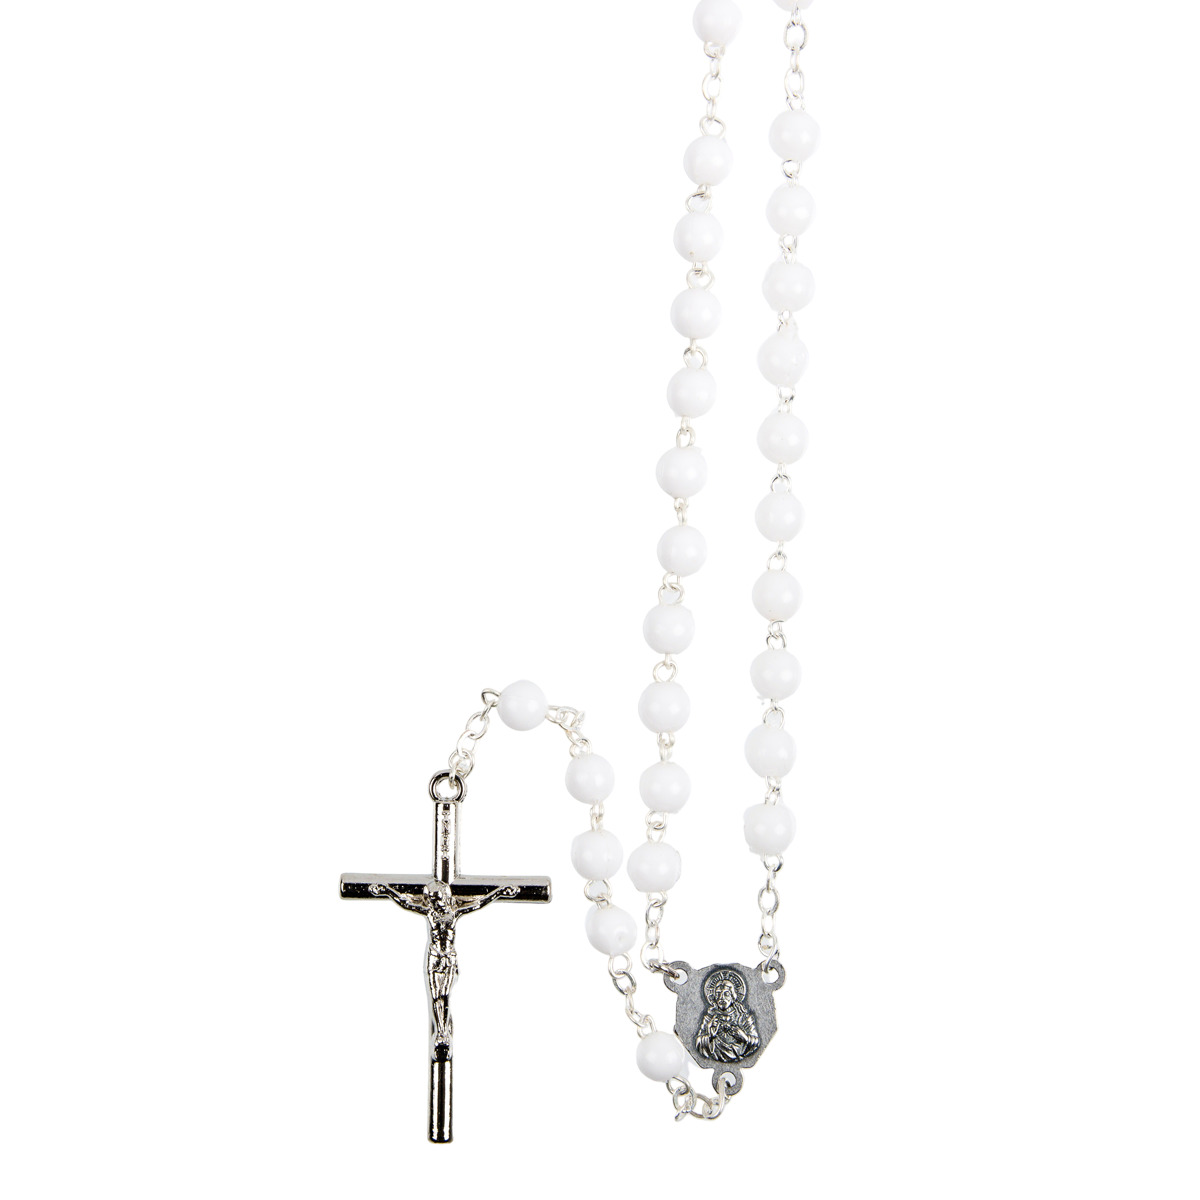 Rosaire 20 dizaines grains plastique, Ø 7 mm, chaîne couleur argentée, longueur au cœur 114 cm, croix avec Christ.